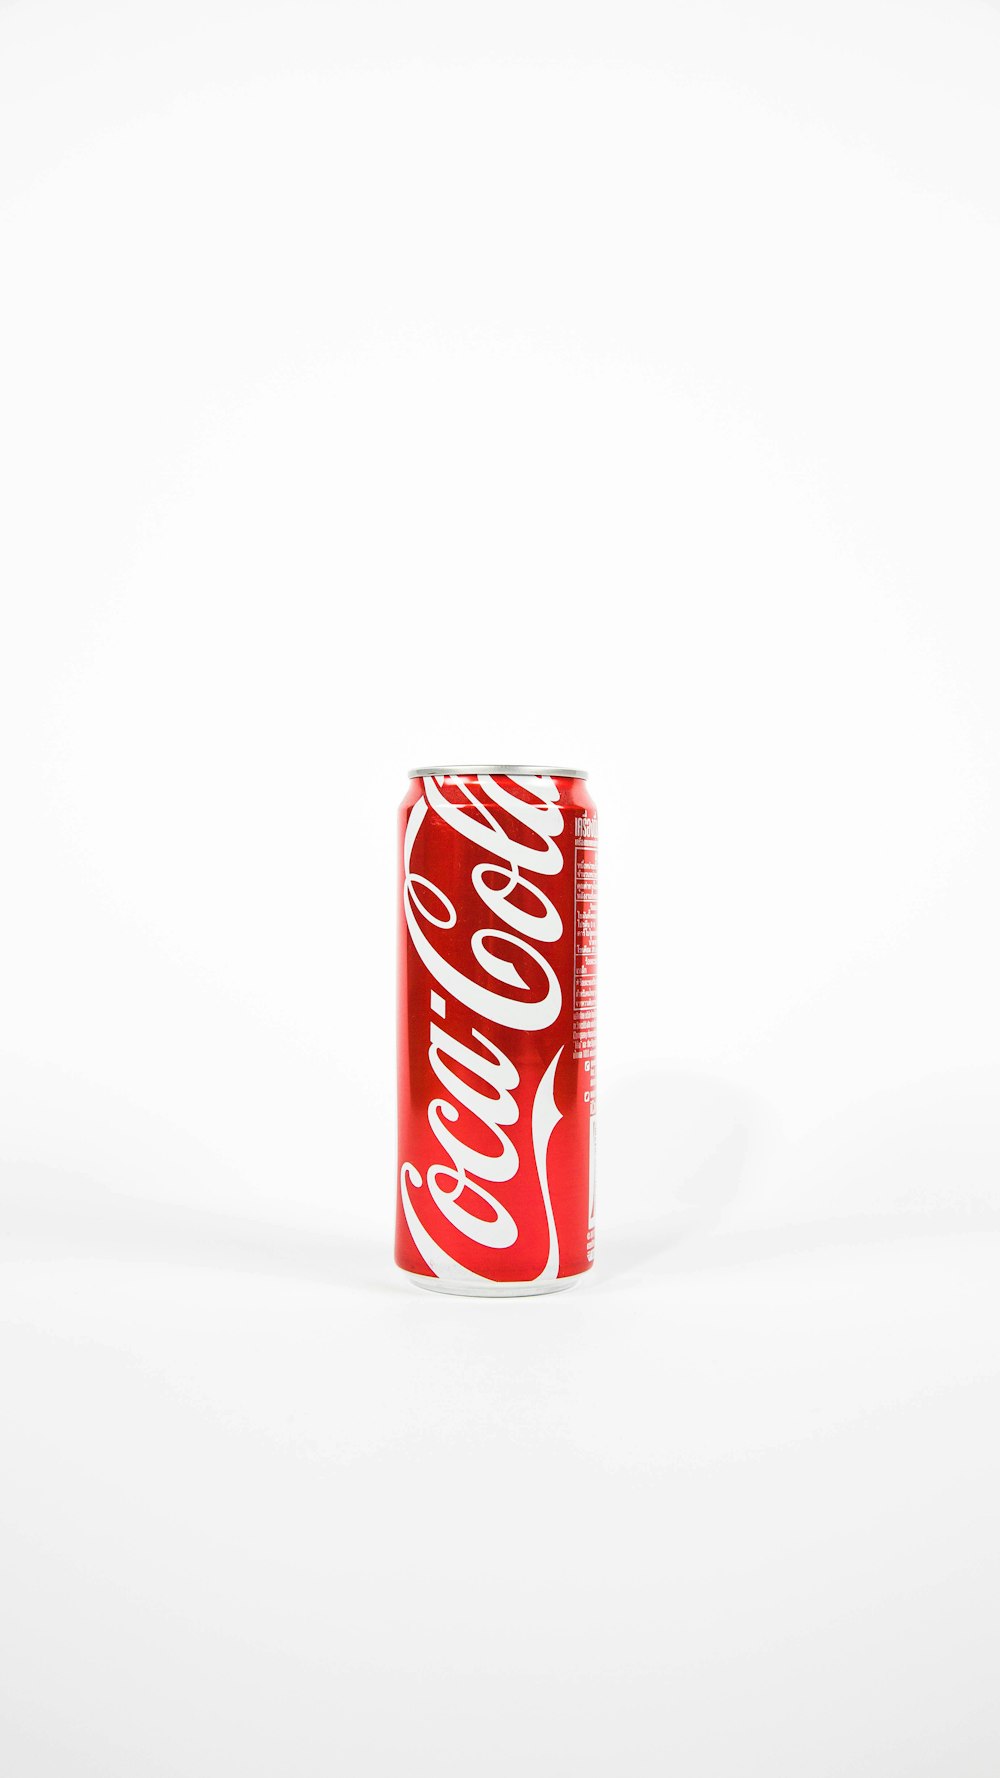 赤いコカ・コーラ缶